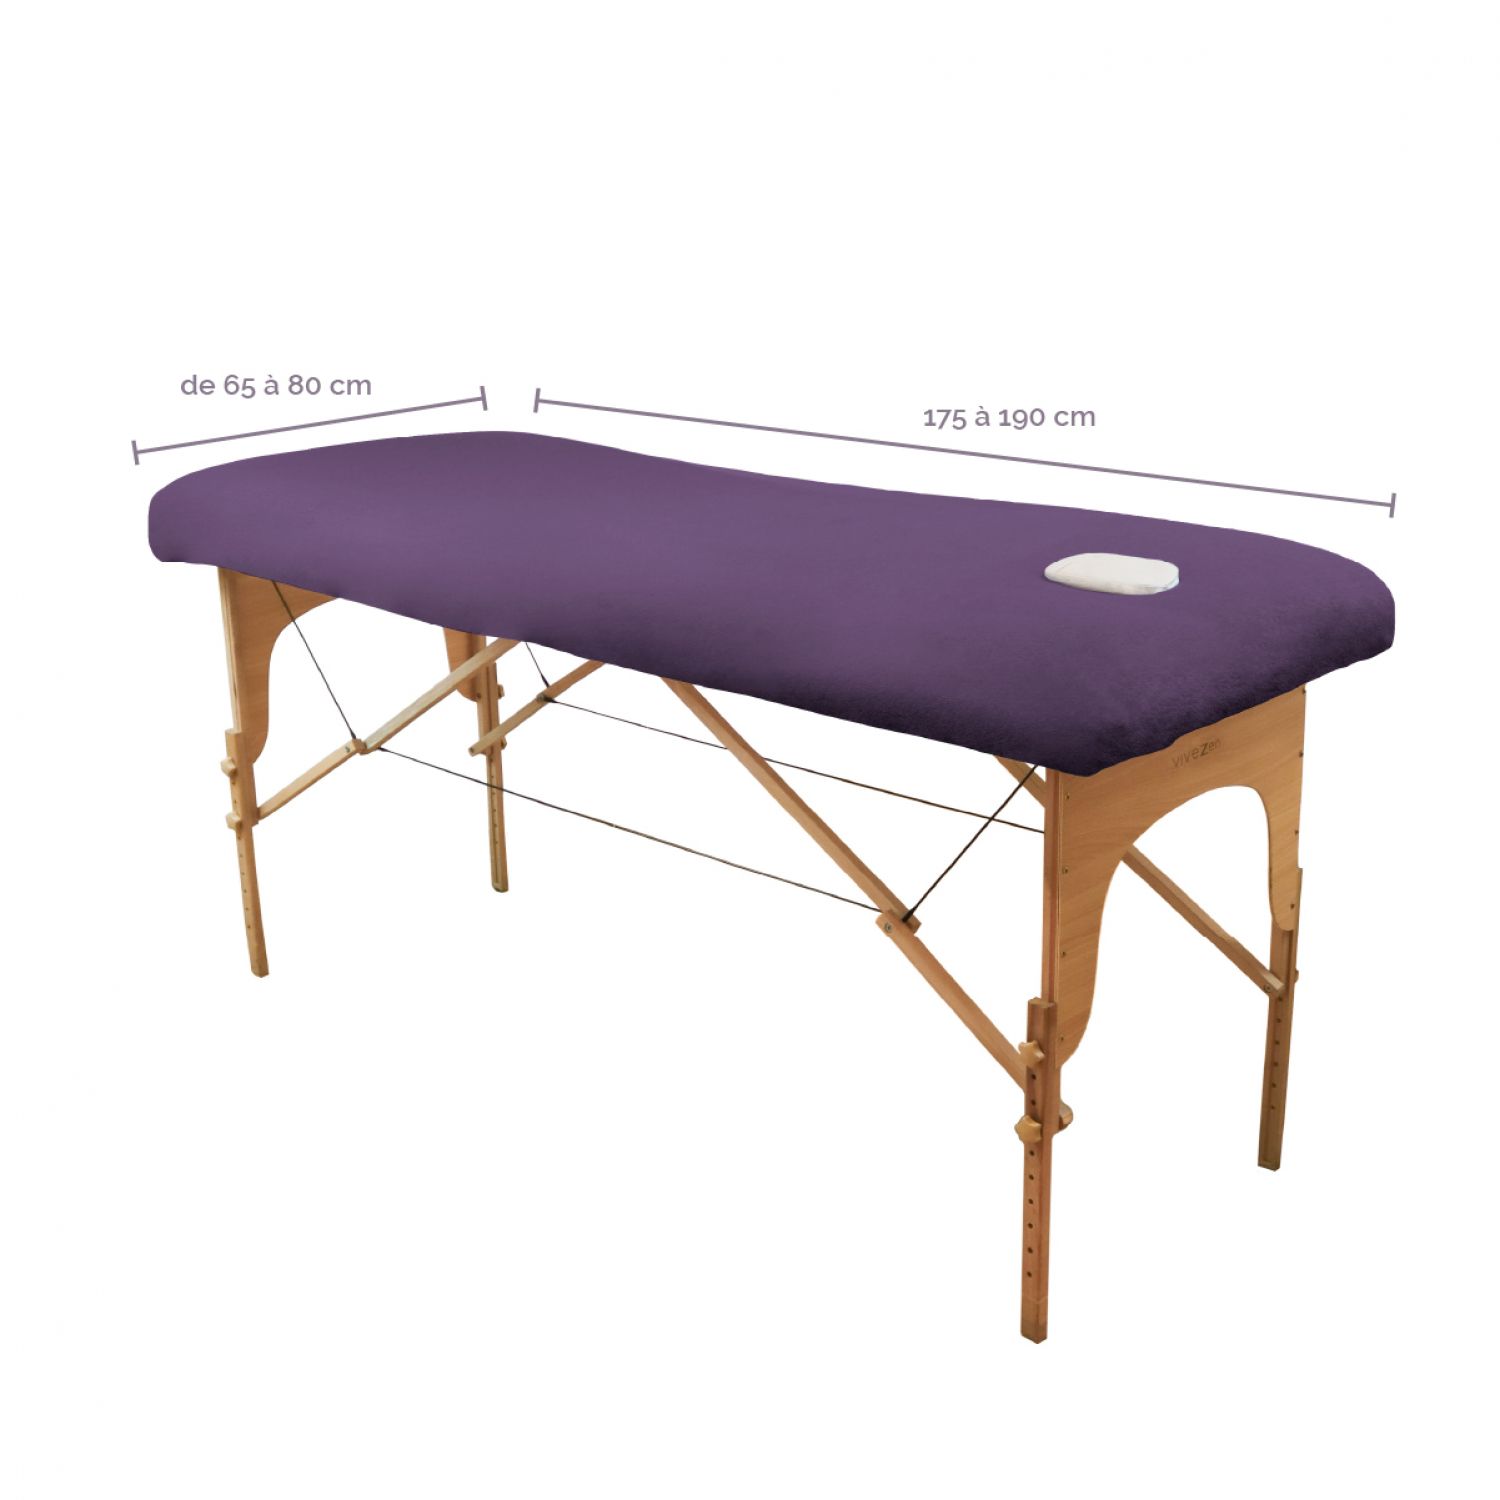 Vivezen - Support Rouleau de Drap d'examen Extensible pour Table de Massage